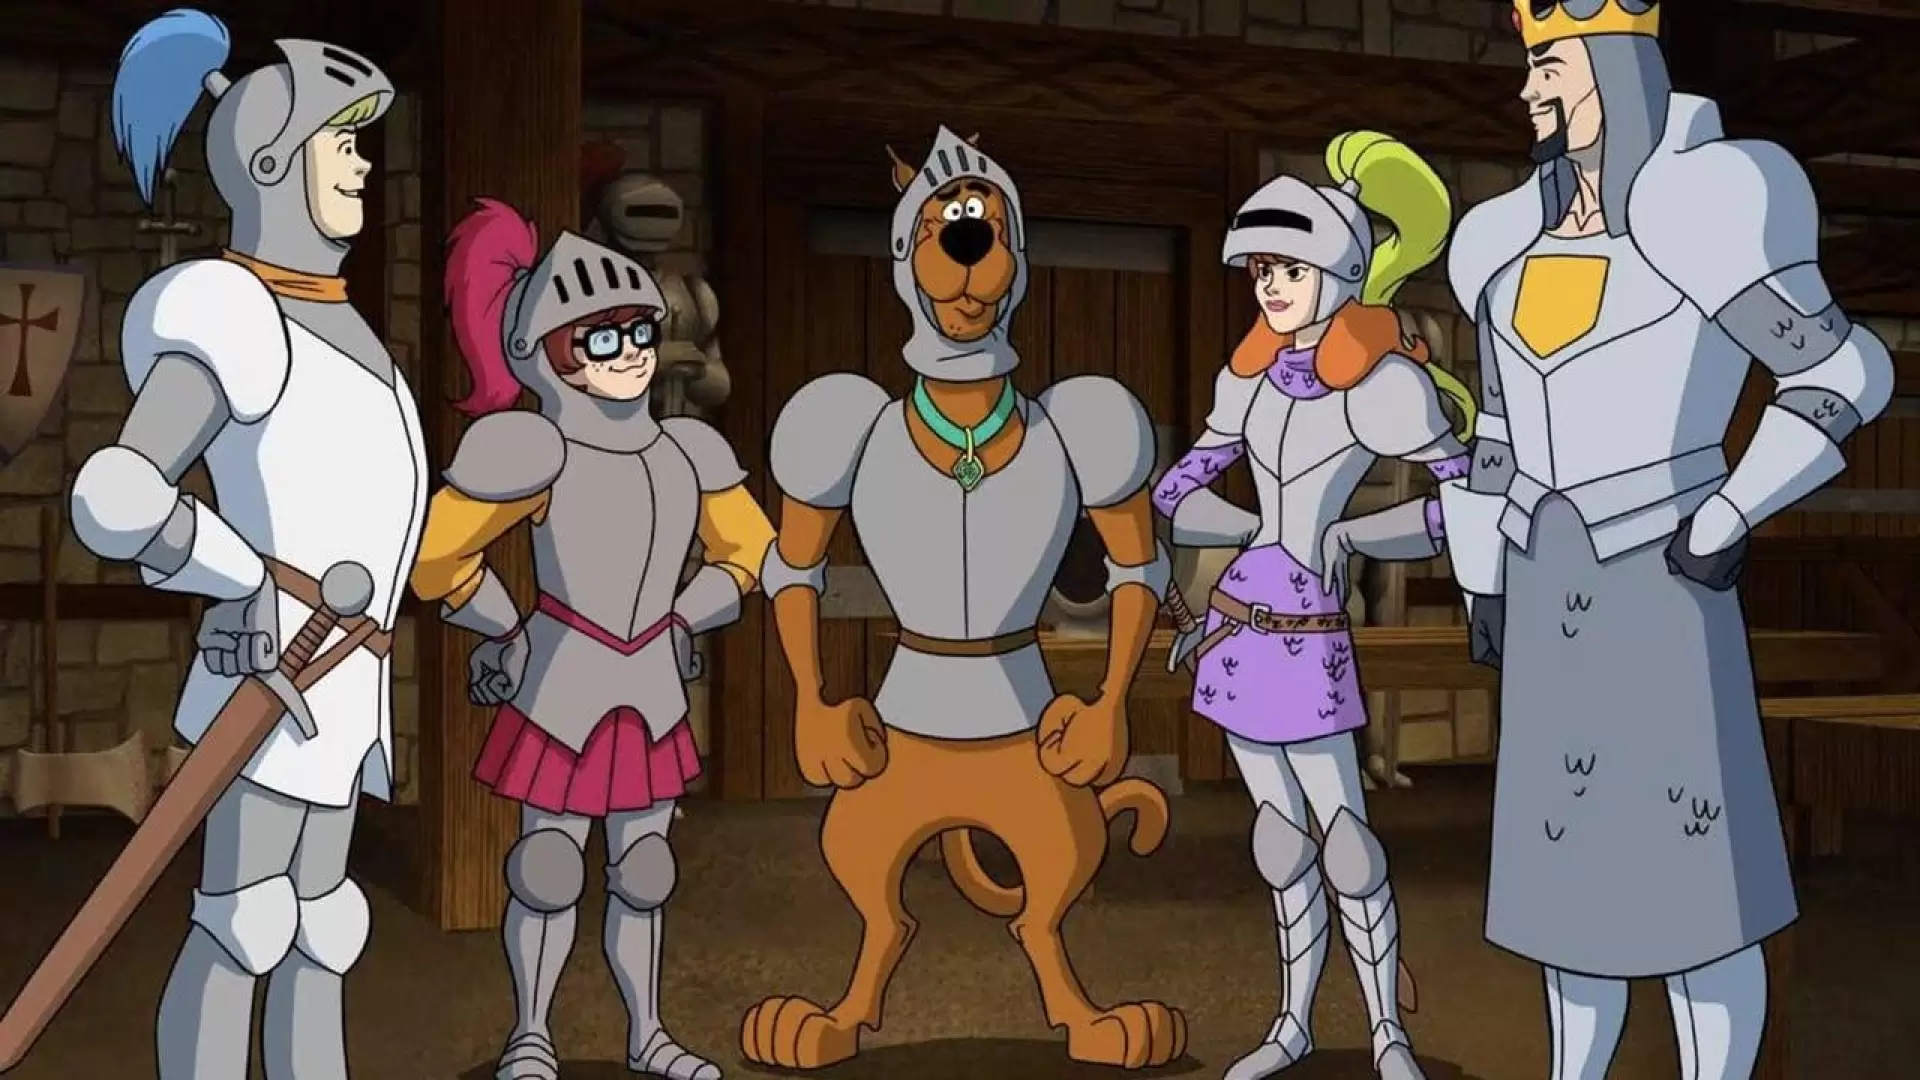 دانلود انیمیشن Scooby-Doo! The Sword and the Scoob 2021 (اسکوبی دو : اسکوب و شمشیر)